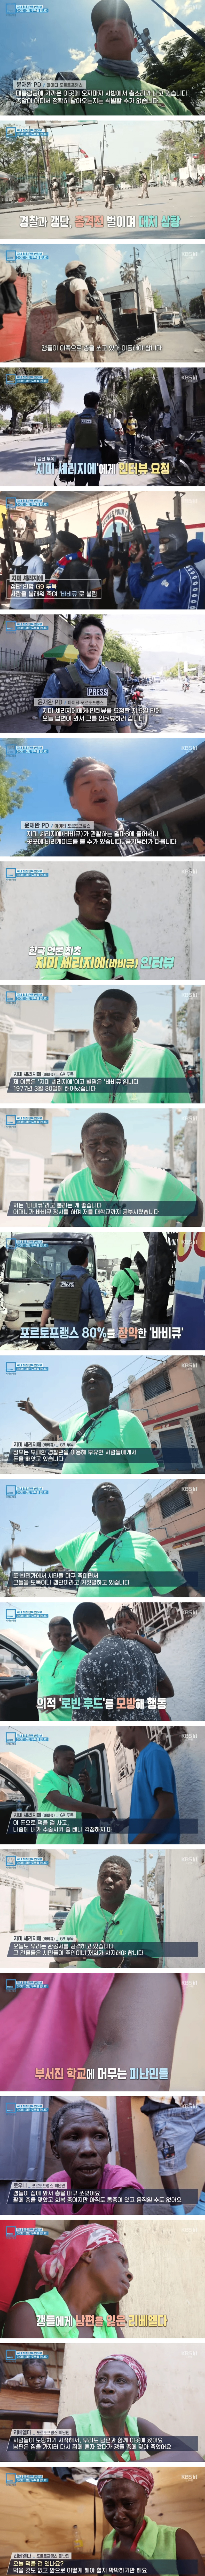 한국 언론 최초 아이티 갱단 인터뷰